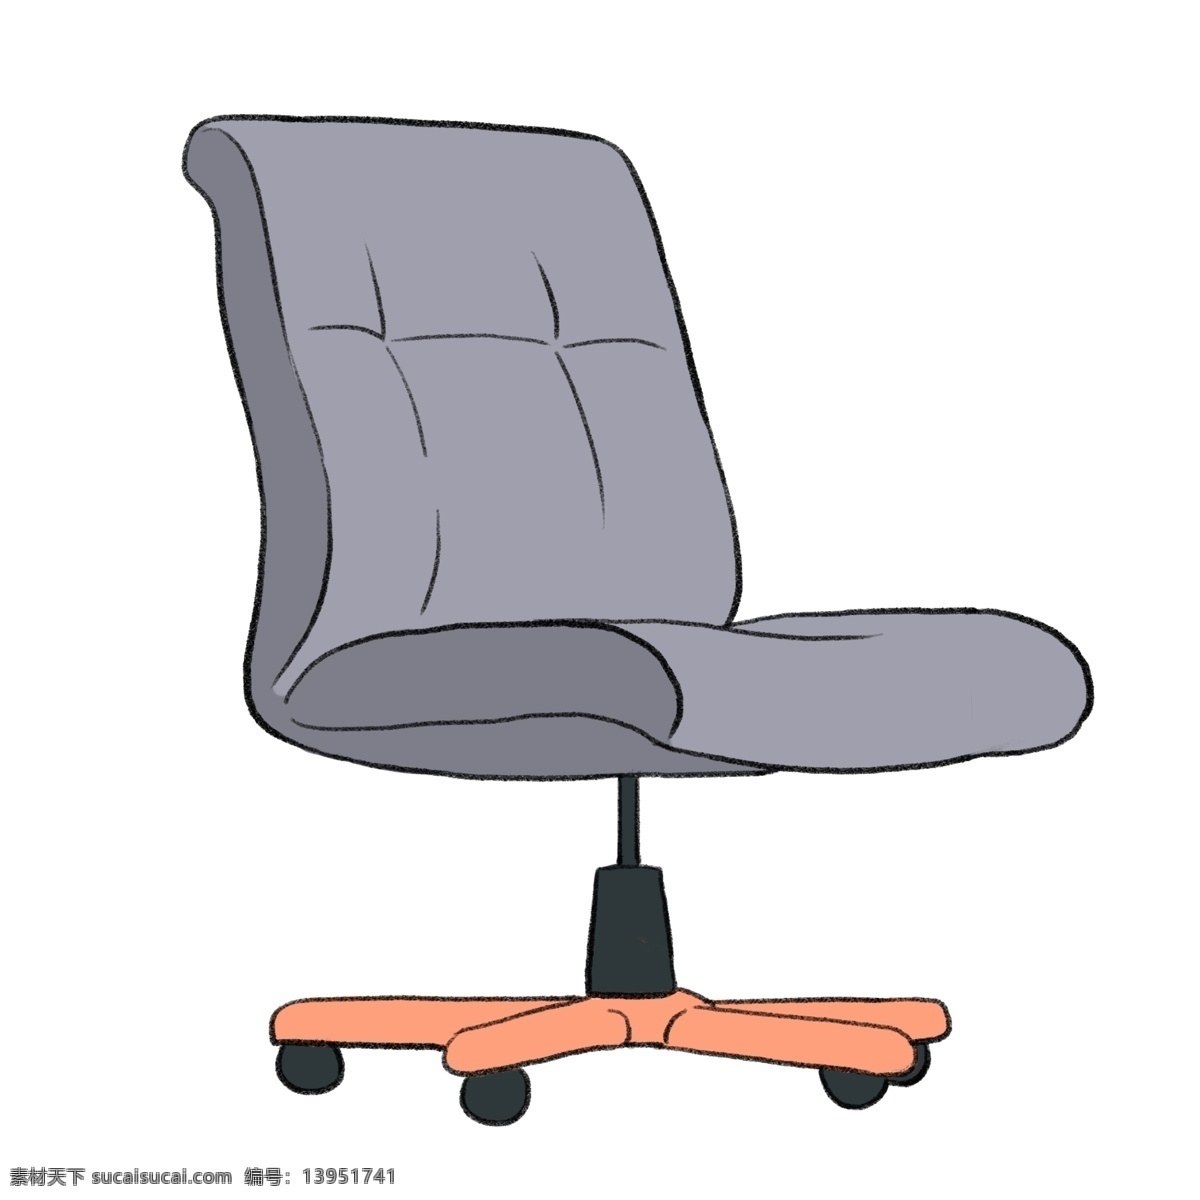 办公用品 椅子 插画 灰色的椅子 卡通插画 办公器材 办公工具 上班用品 办公的椅子